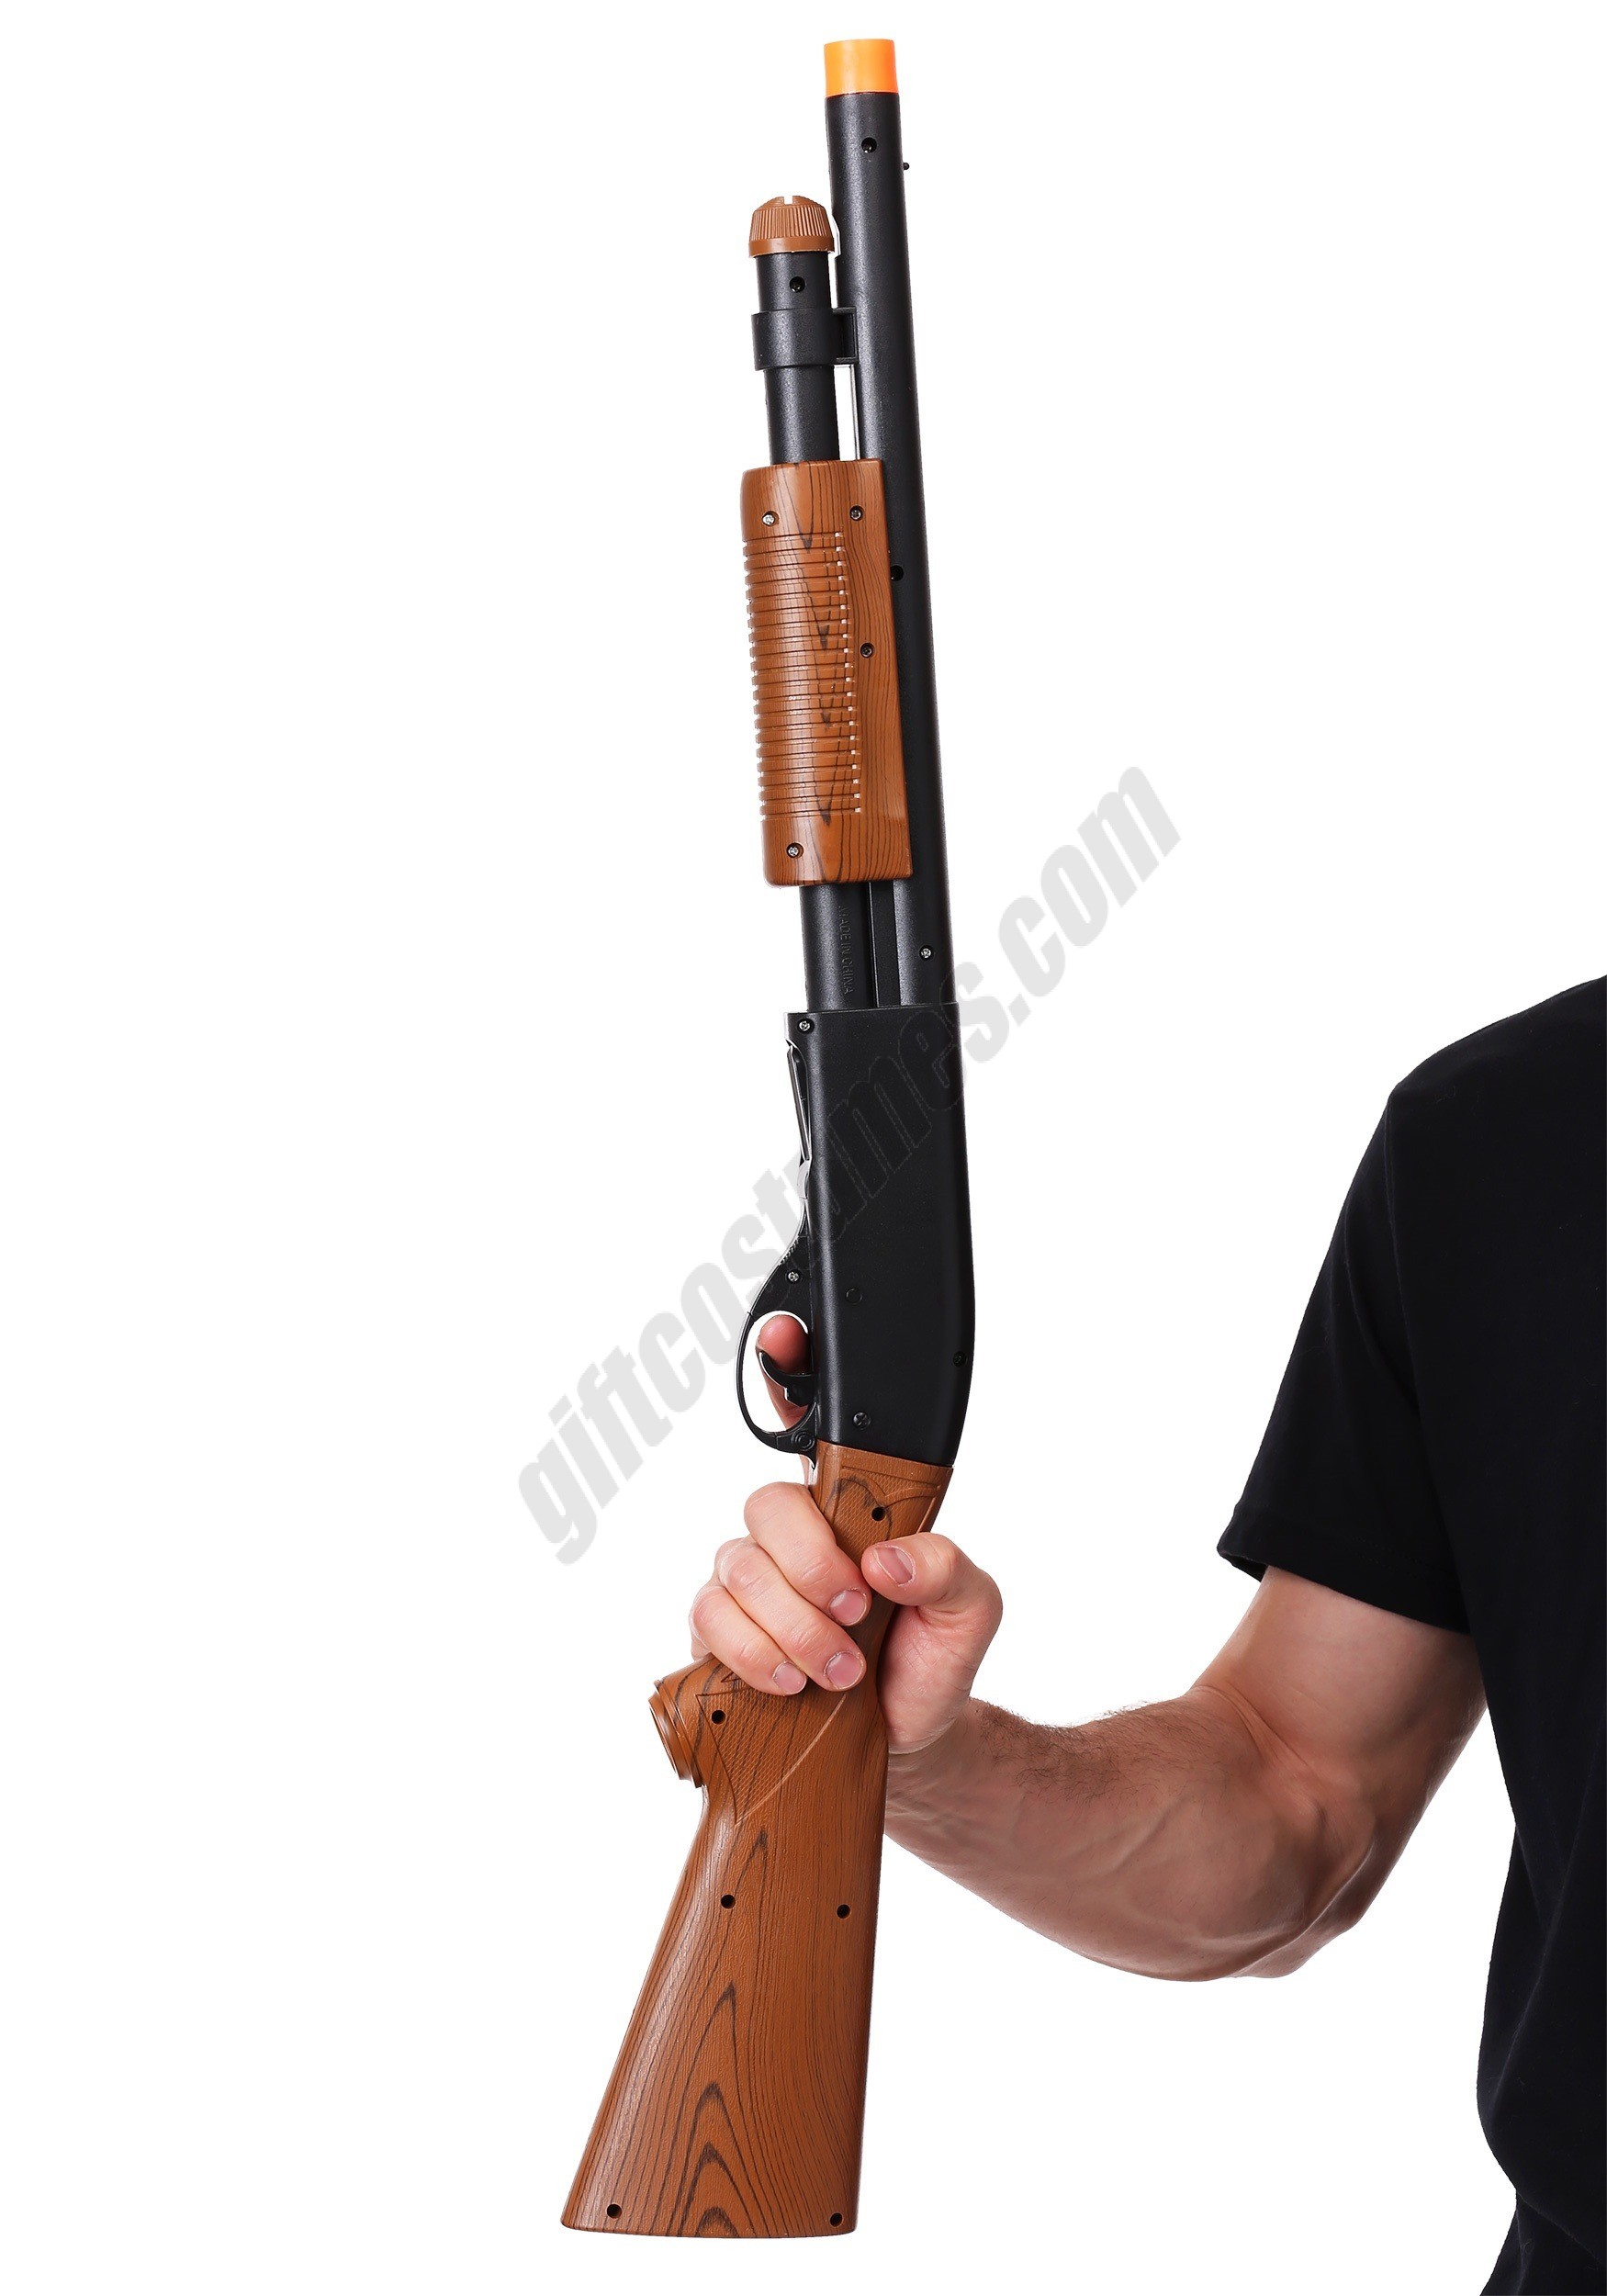 Pump Action Shotgun Toy Weapon Promotions - Pump Action Shotgun Toy Weapon Promotions